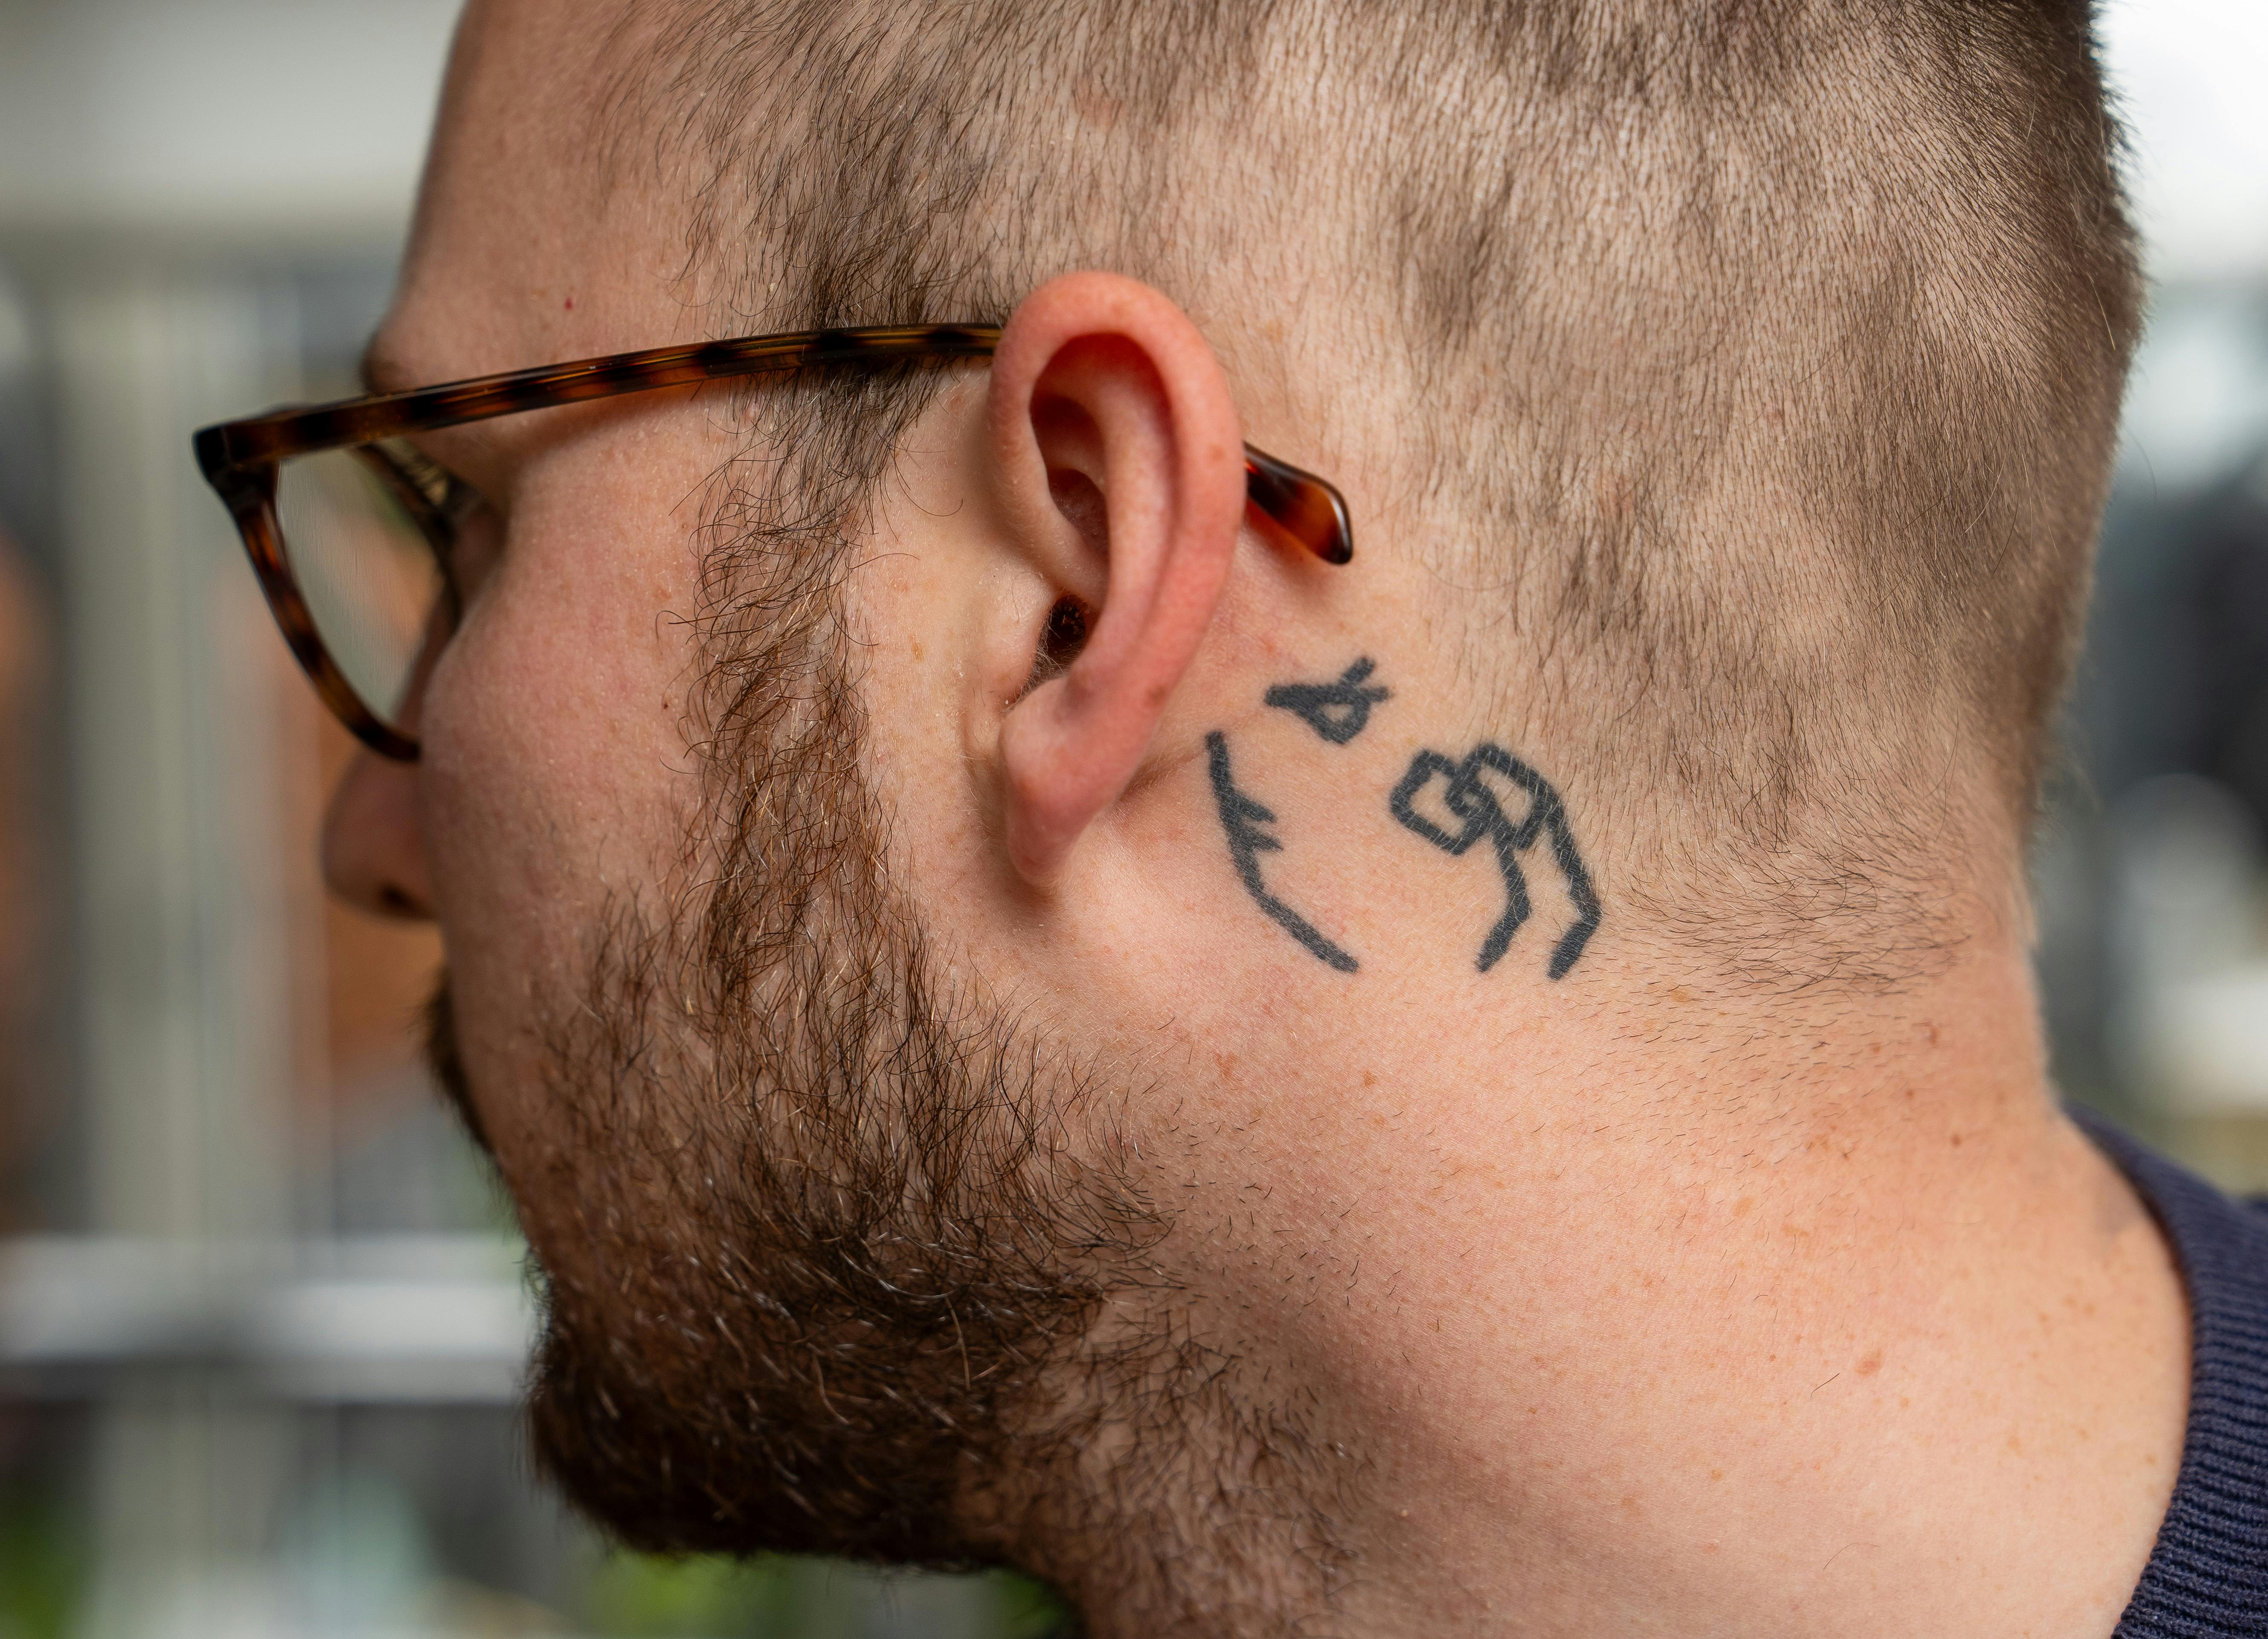 Tobias er stor fan af The Minds of 99 og har bandets logo tatoveret bag øret. – Jeg har fået den lavet sammen med fire andre i en brandert i London. Så tænkte vi, at vi lige skulle have sådan en, lyder det.